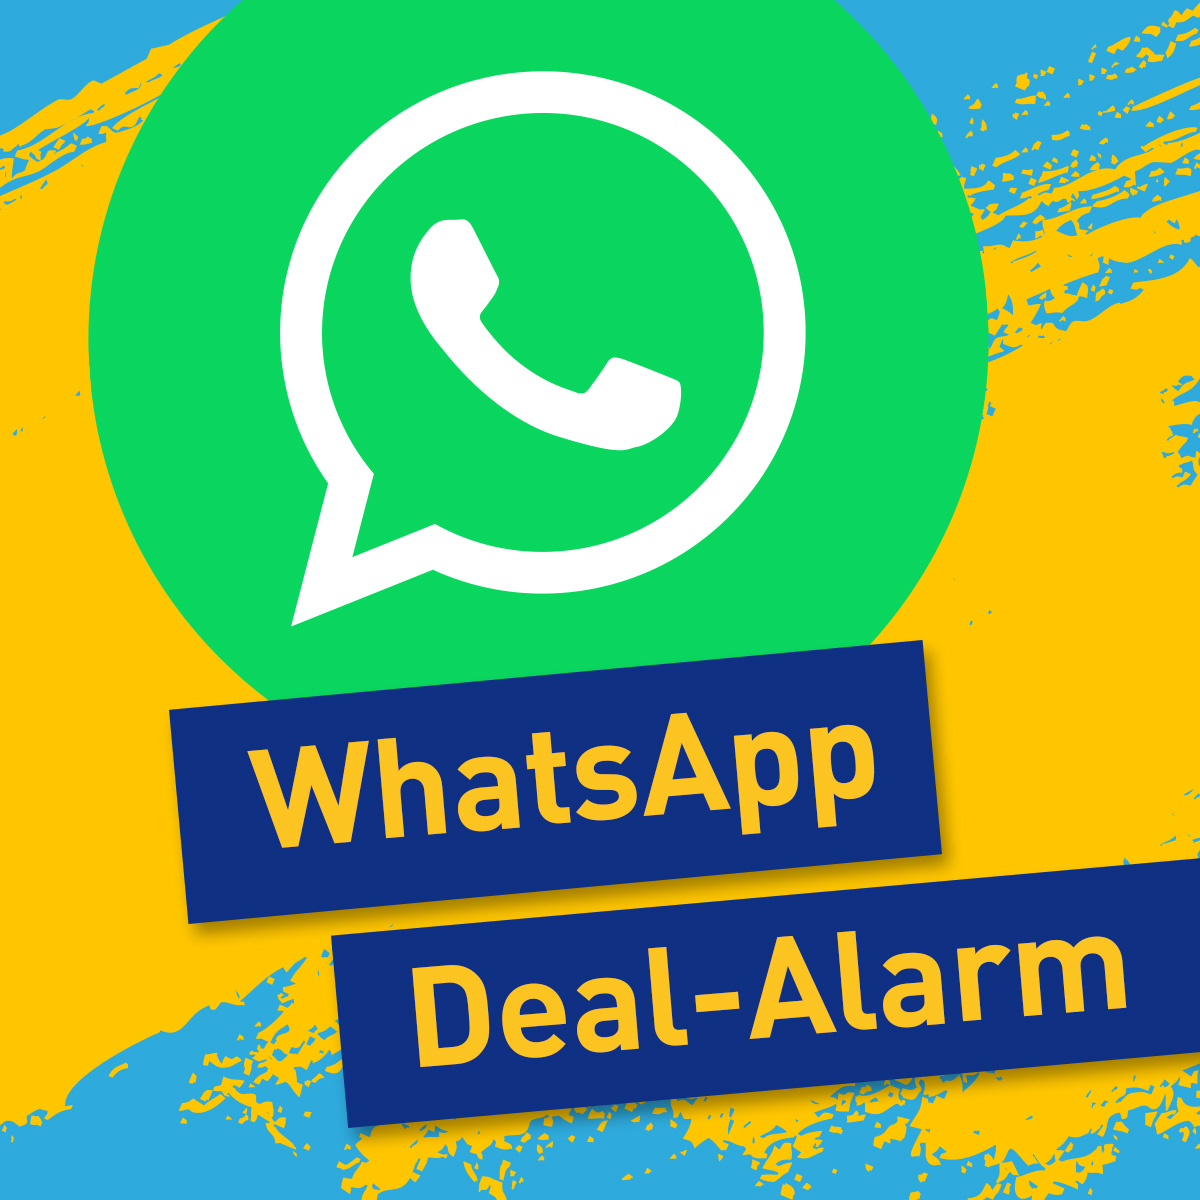 Error Fare direkt aufs Handy Der Urlaubstracker WhatsApp Deal Alarm ist da Urlaubstracker